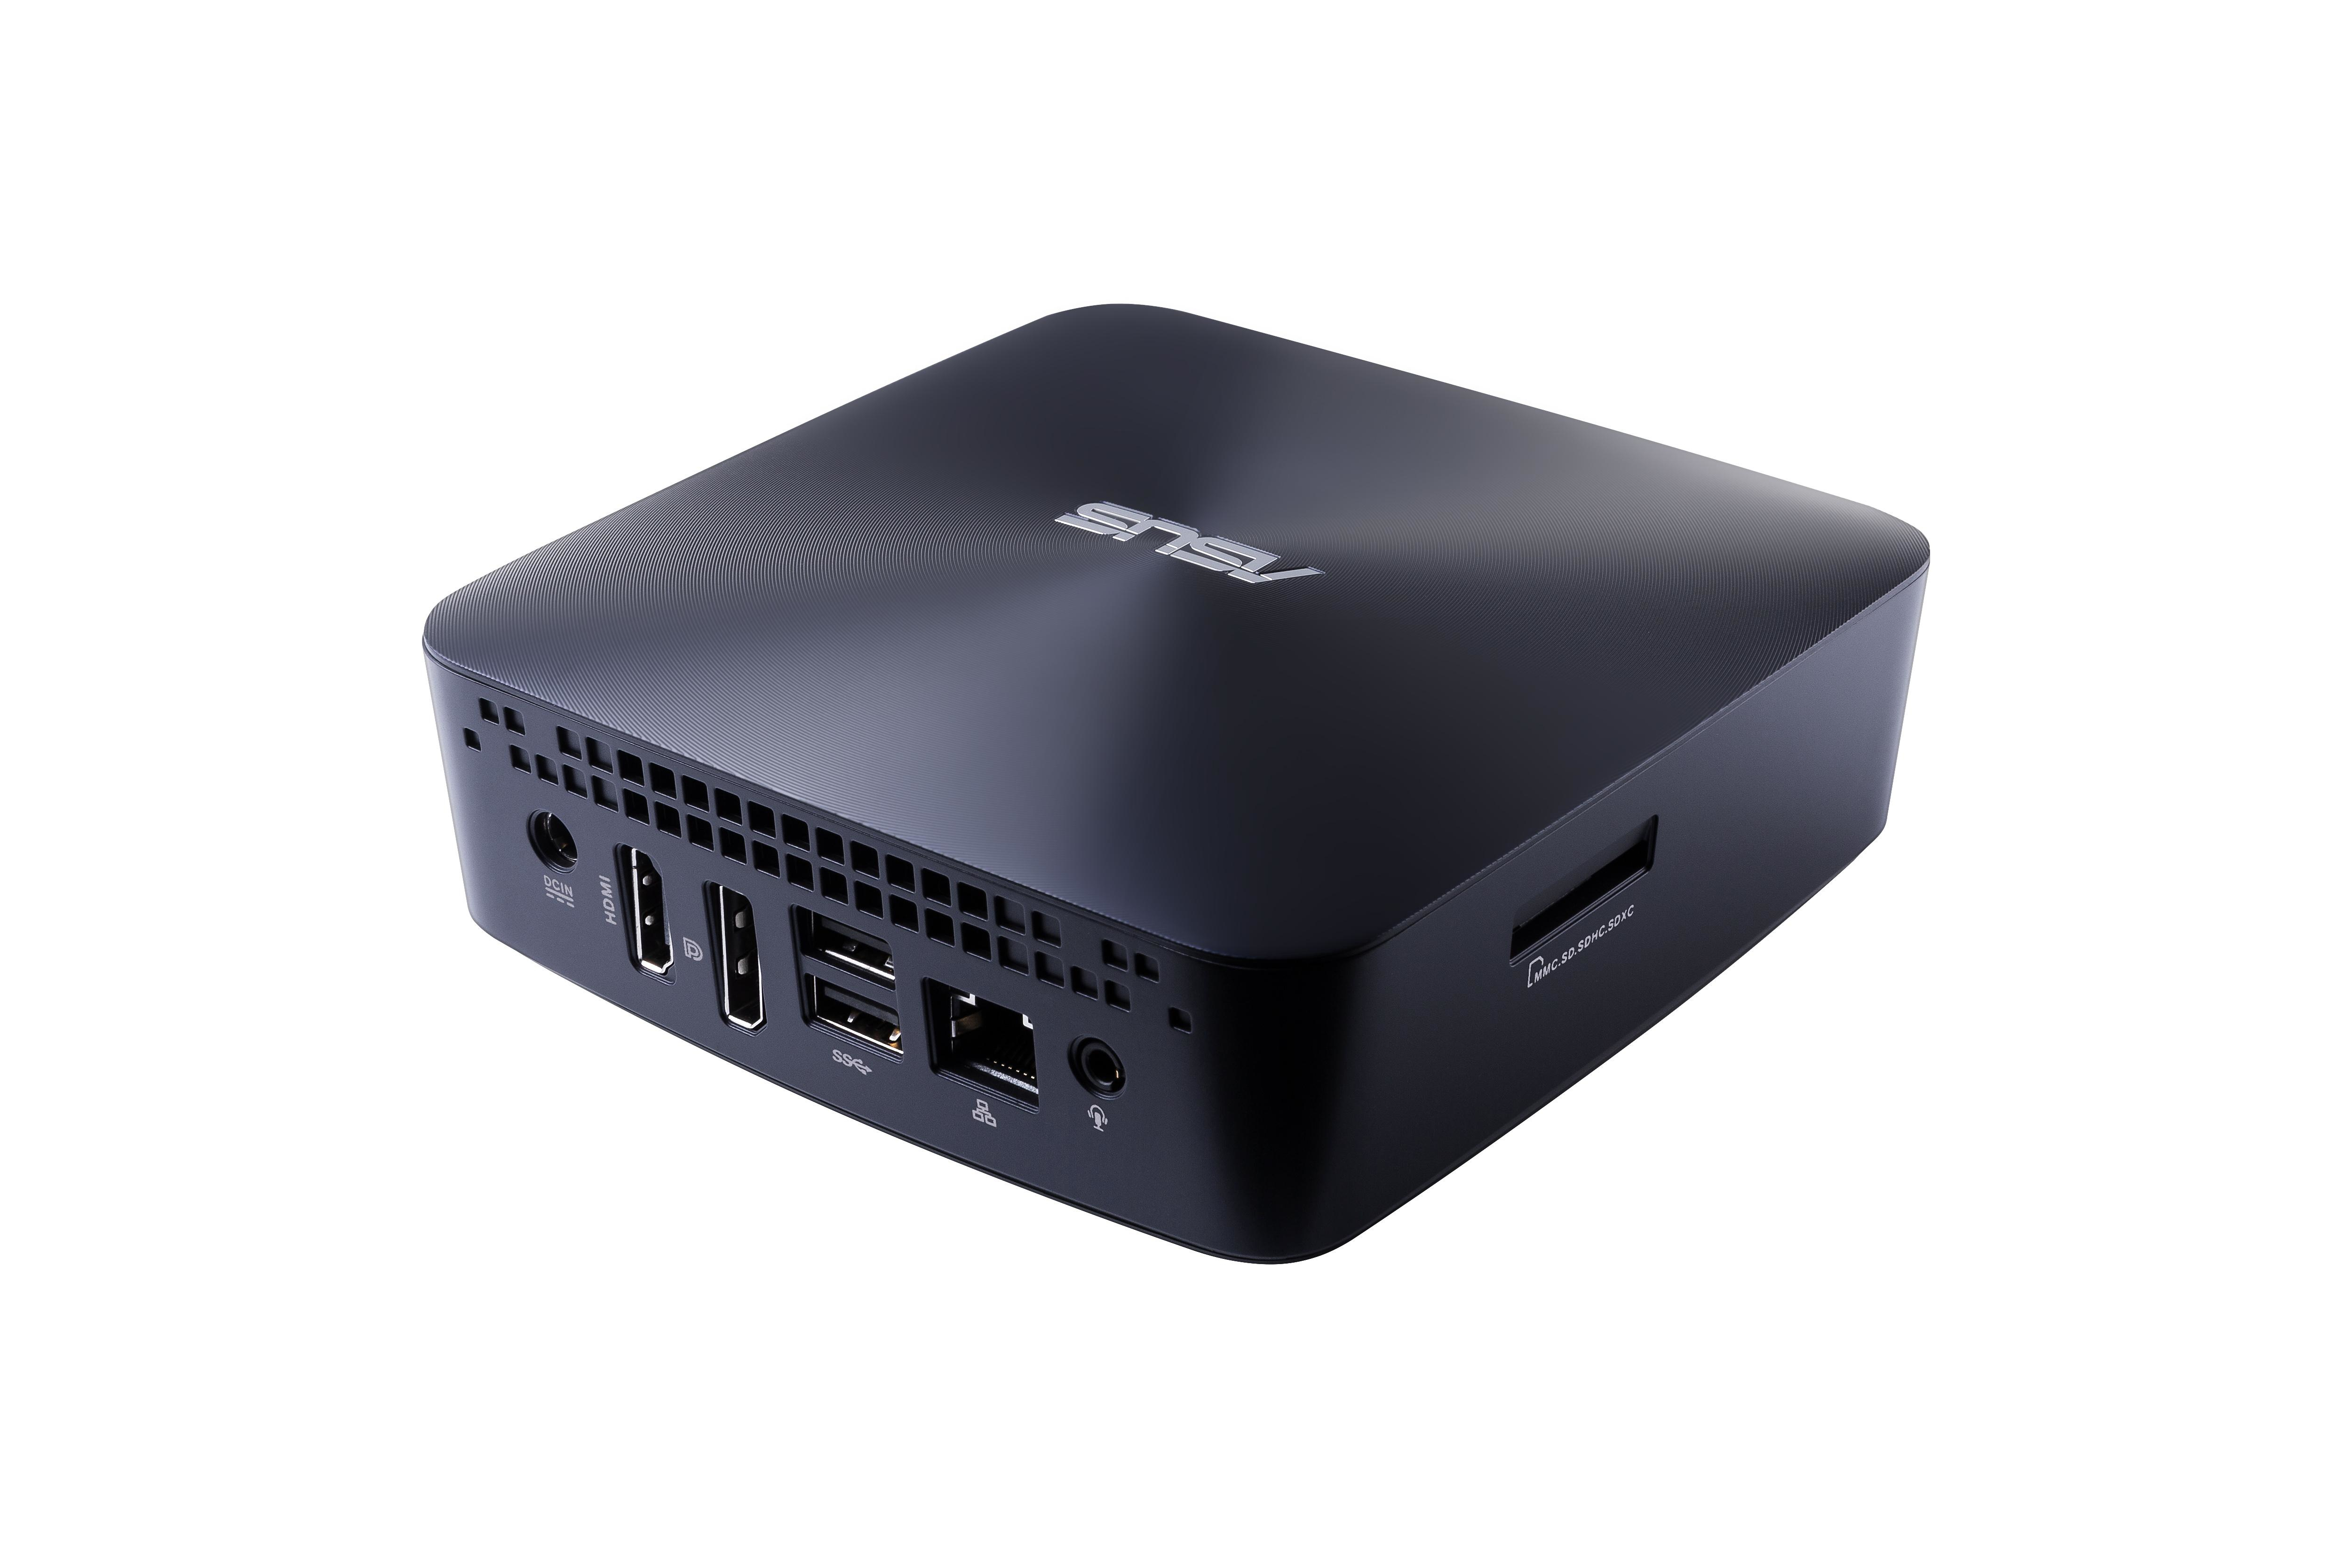 Asus Vivomini Un65U-M022M Core I5-7200U, Hdmi, Wifi, Usb 3.0